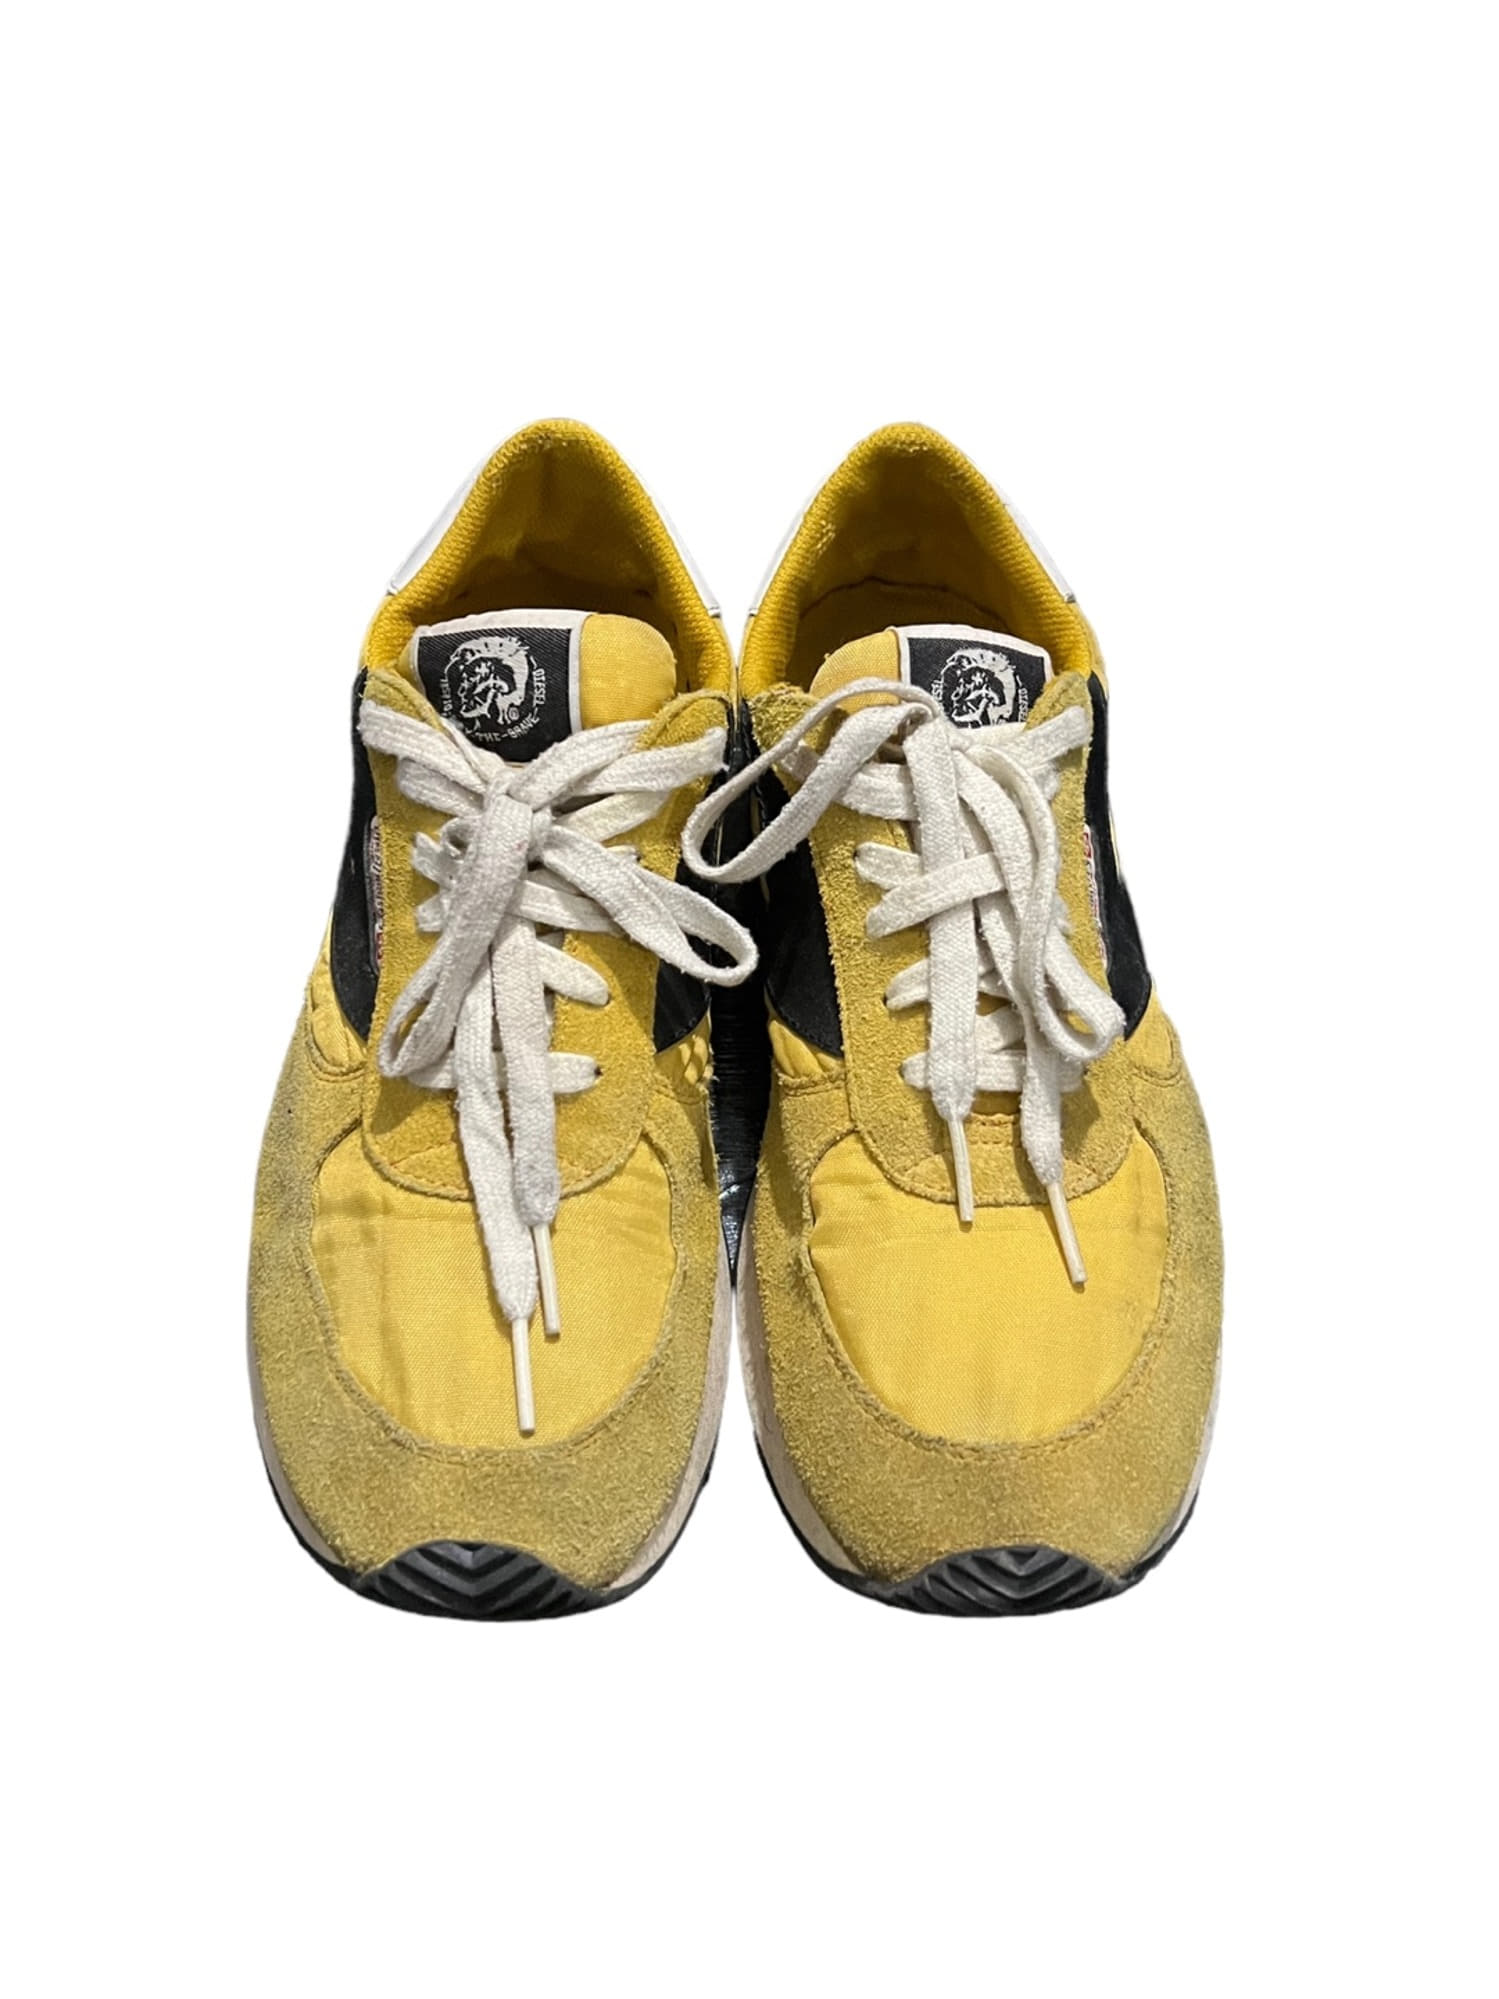 Diesel Yellow Sneakers 260